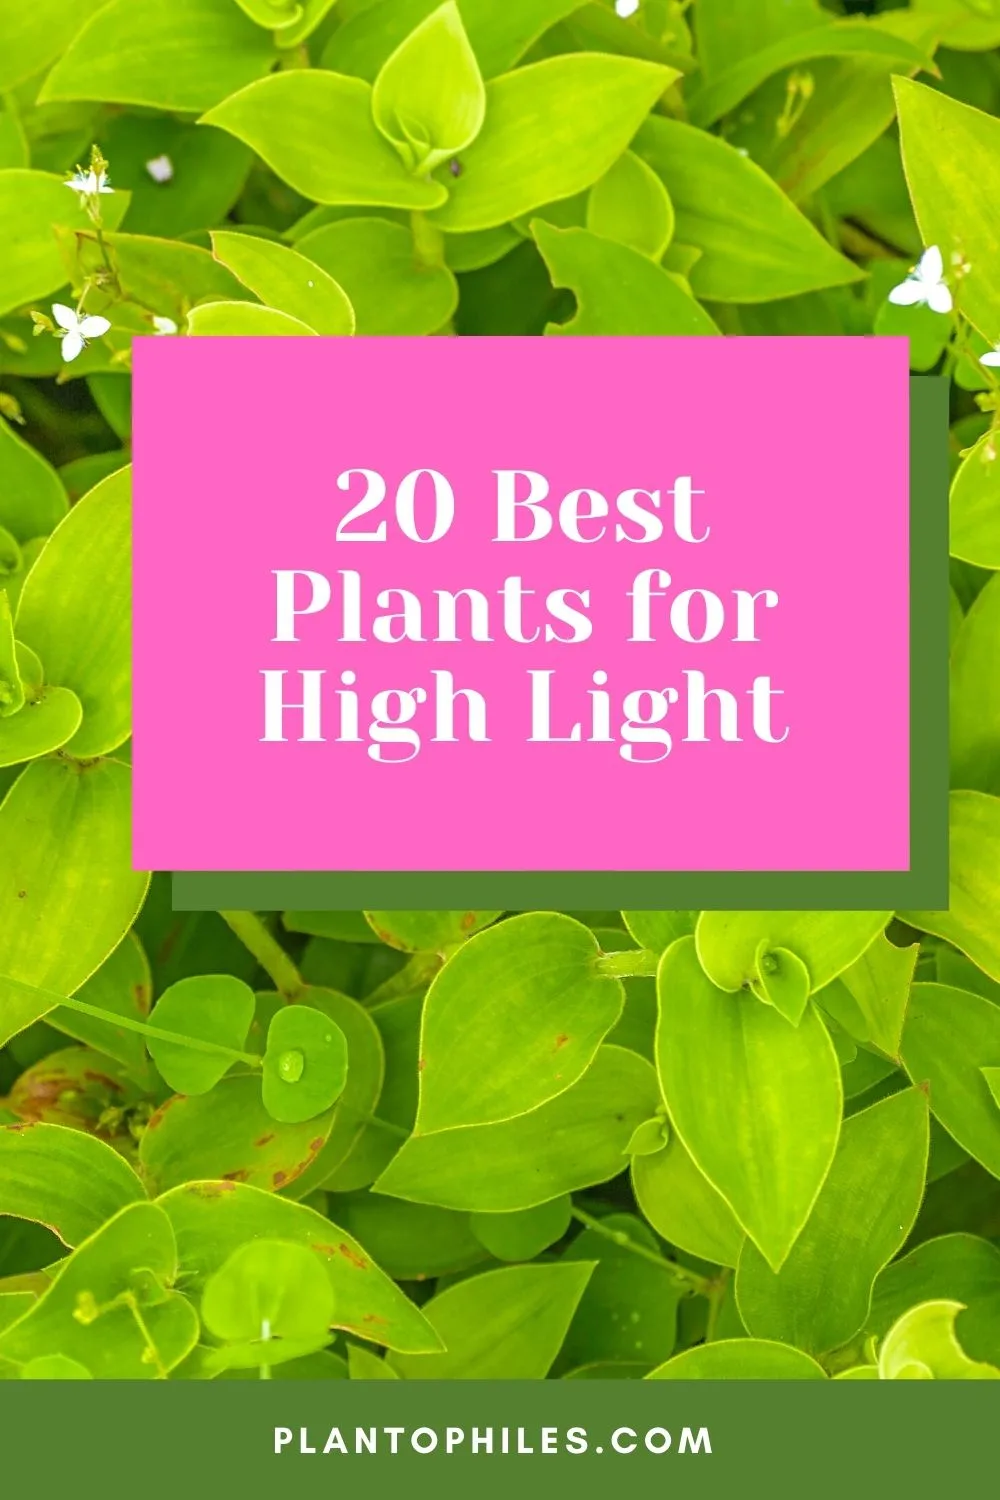 20 Best Plants for High Light